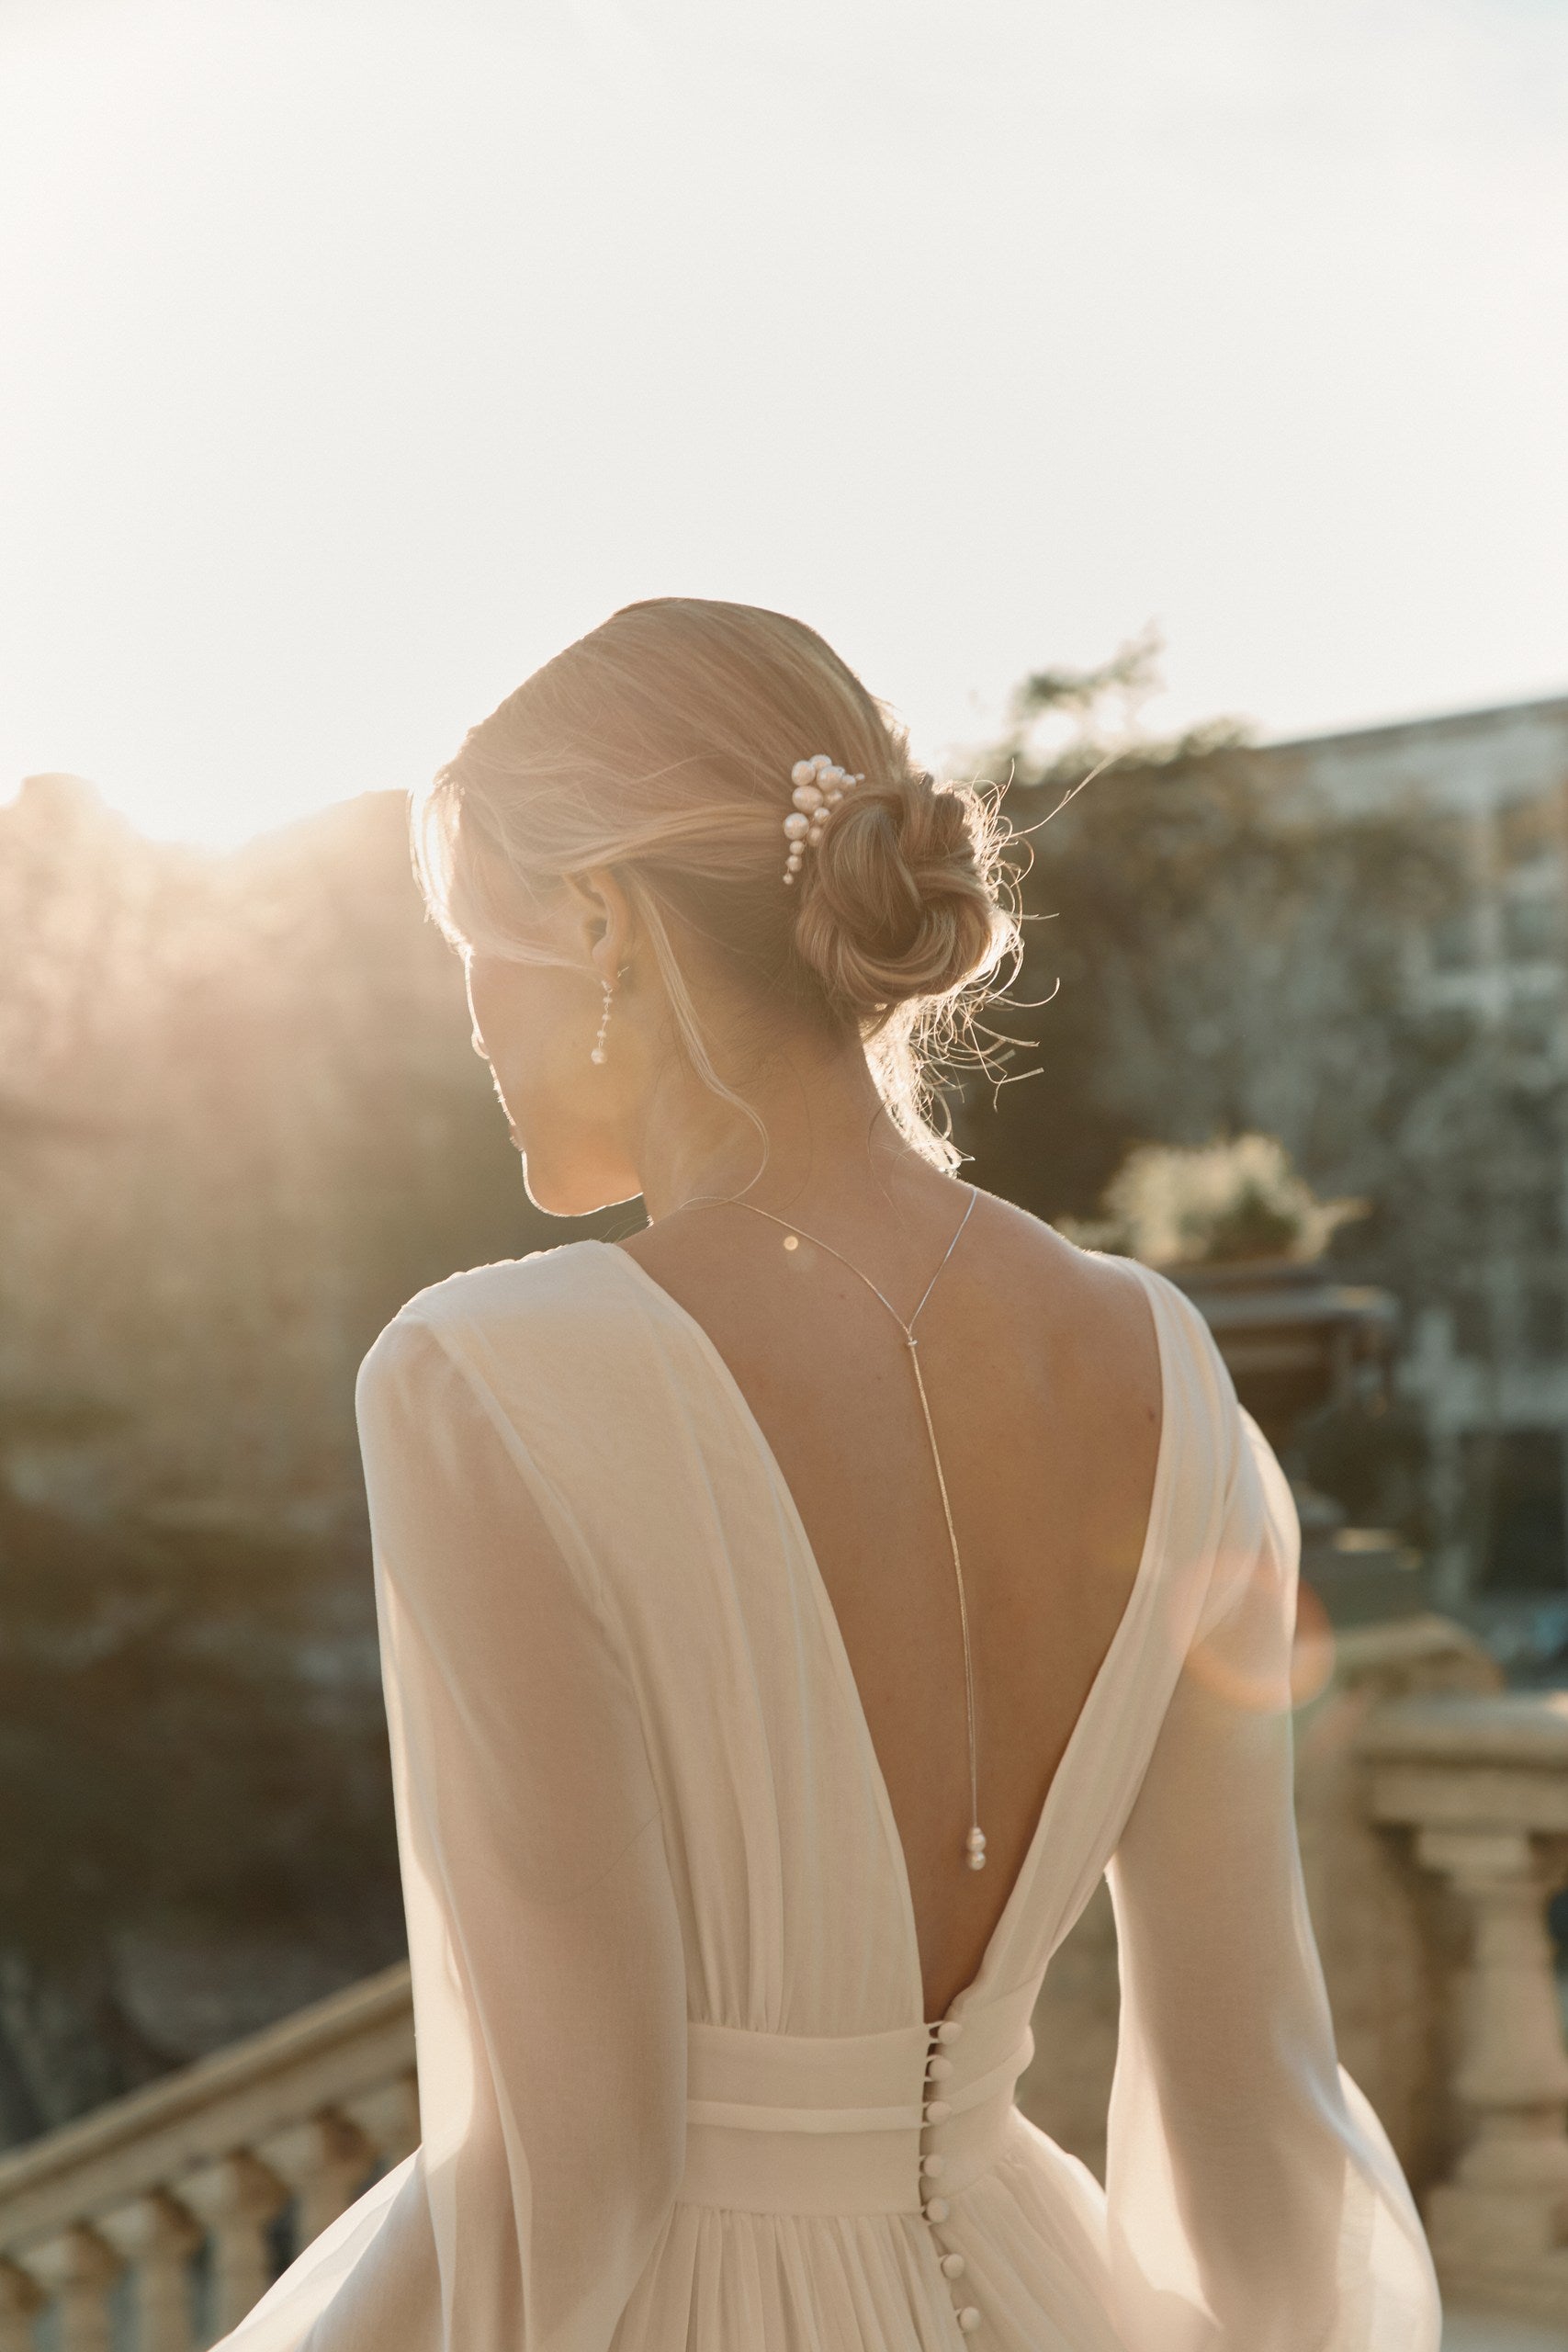 Jeune femme avec un chignon romantique agrémenté de bijoux de perles naturelles 